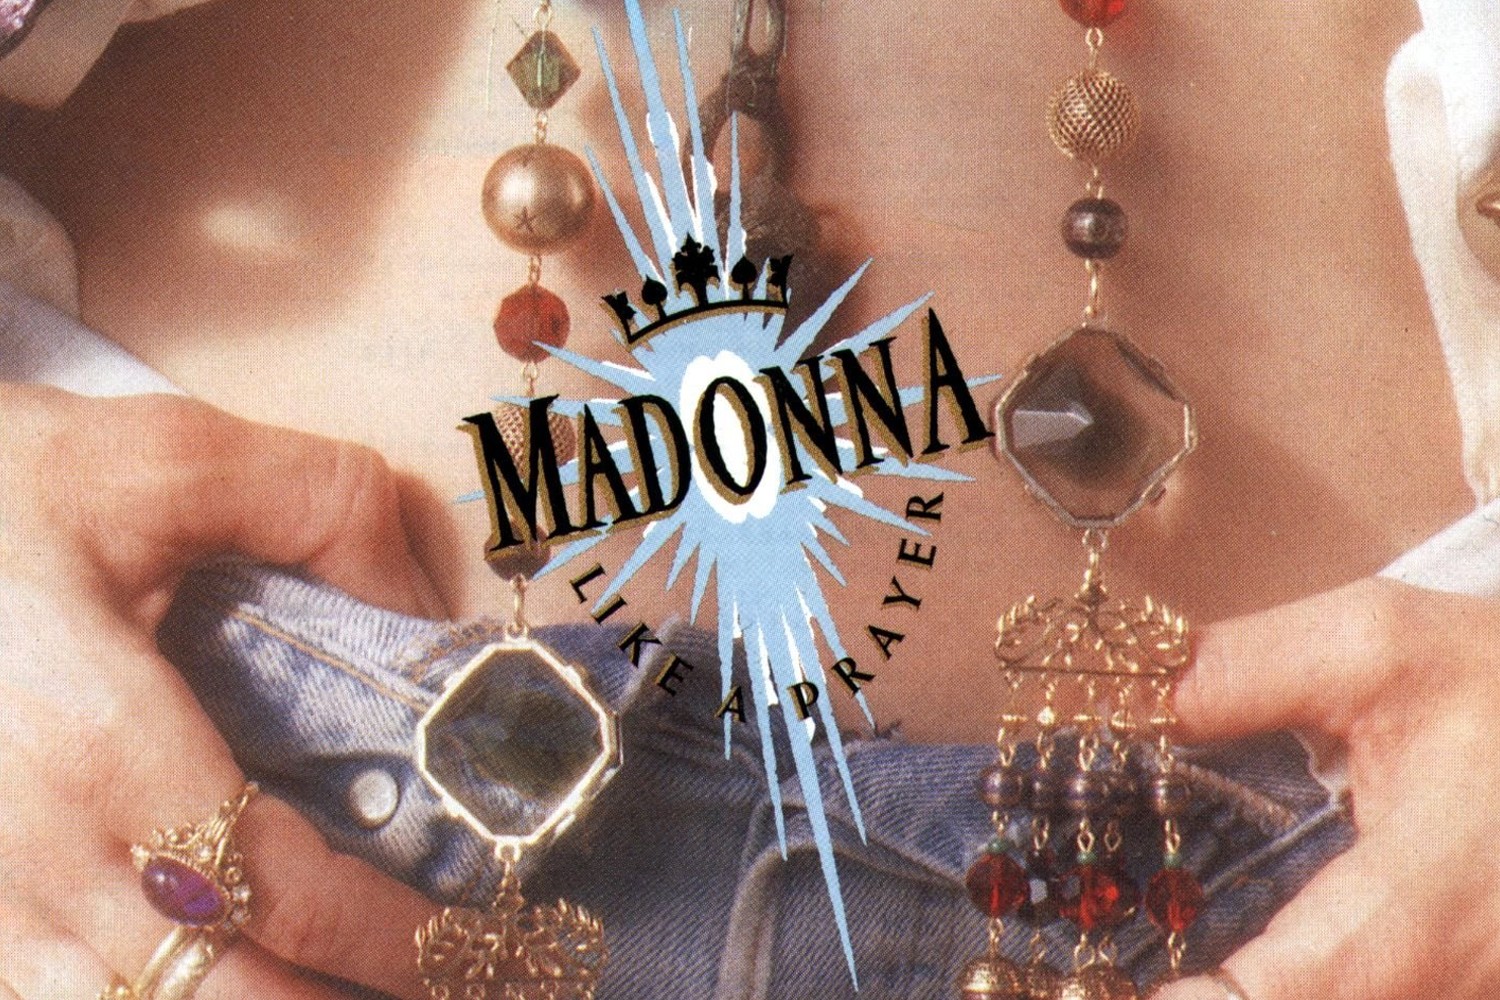 Capa de Like a Prayer, álbum da Madonna.